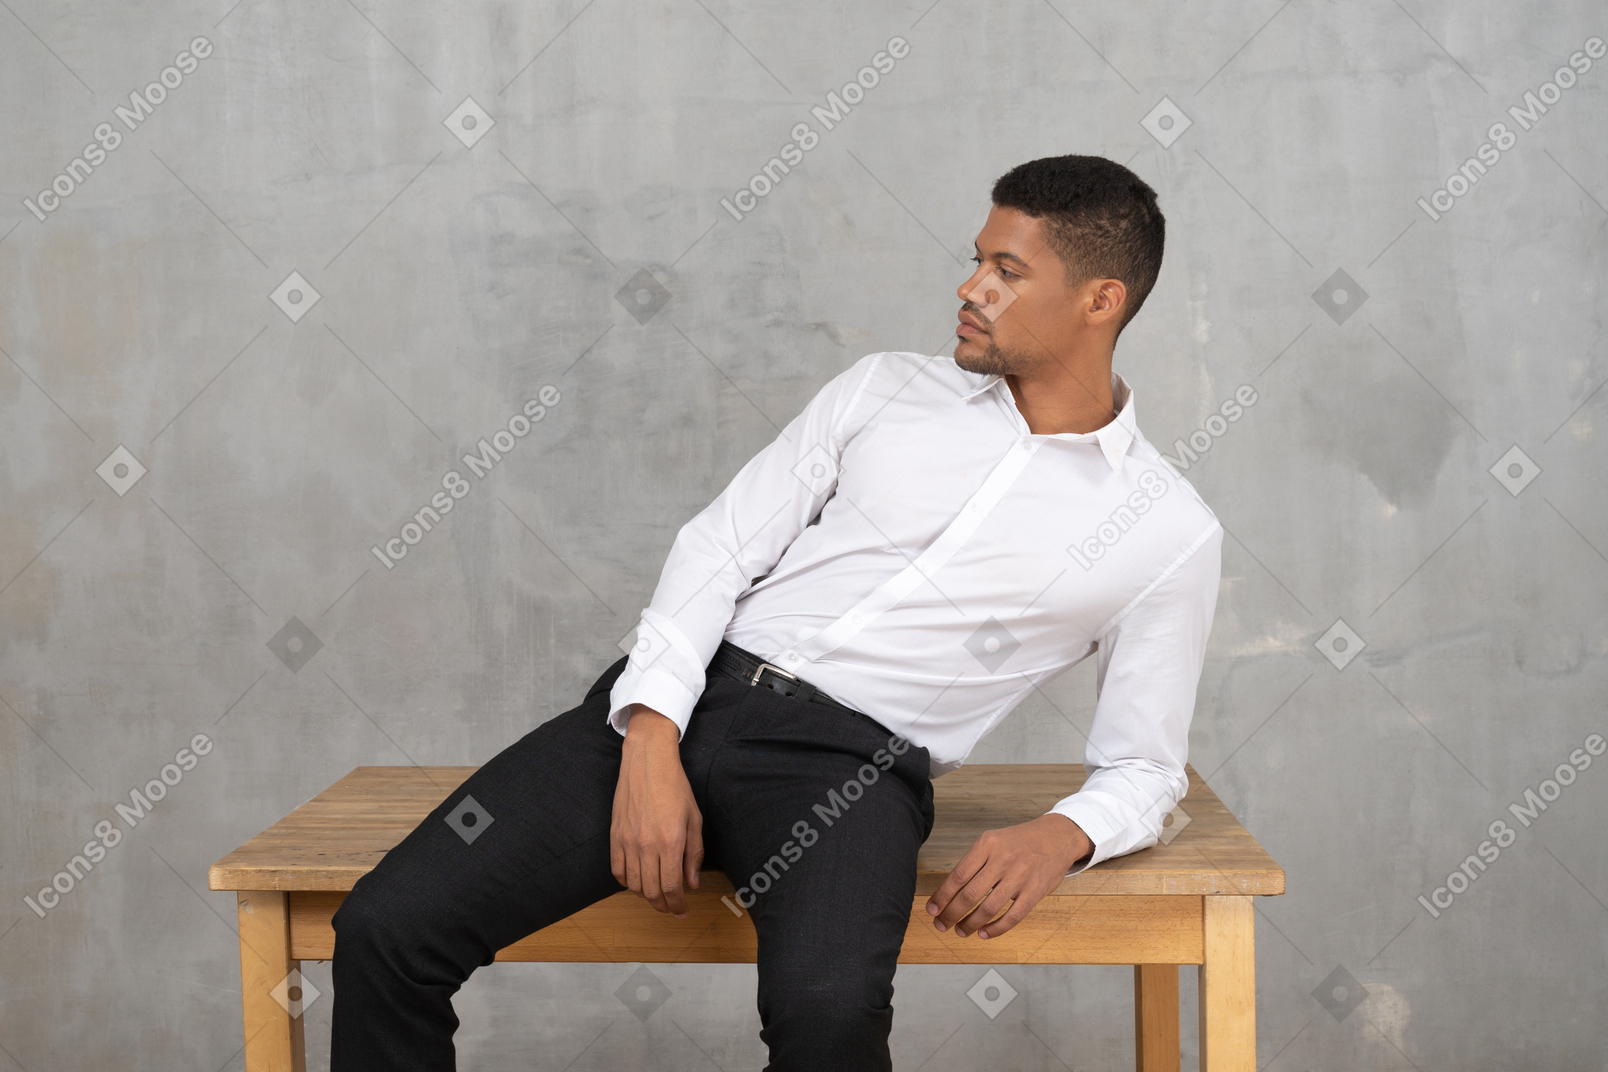 Hombre relajado con ropa de oficina sentado en una mesa